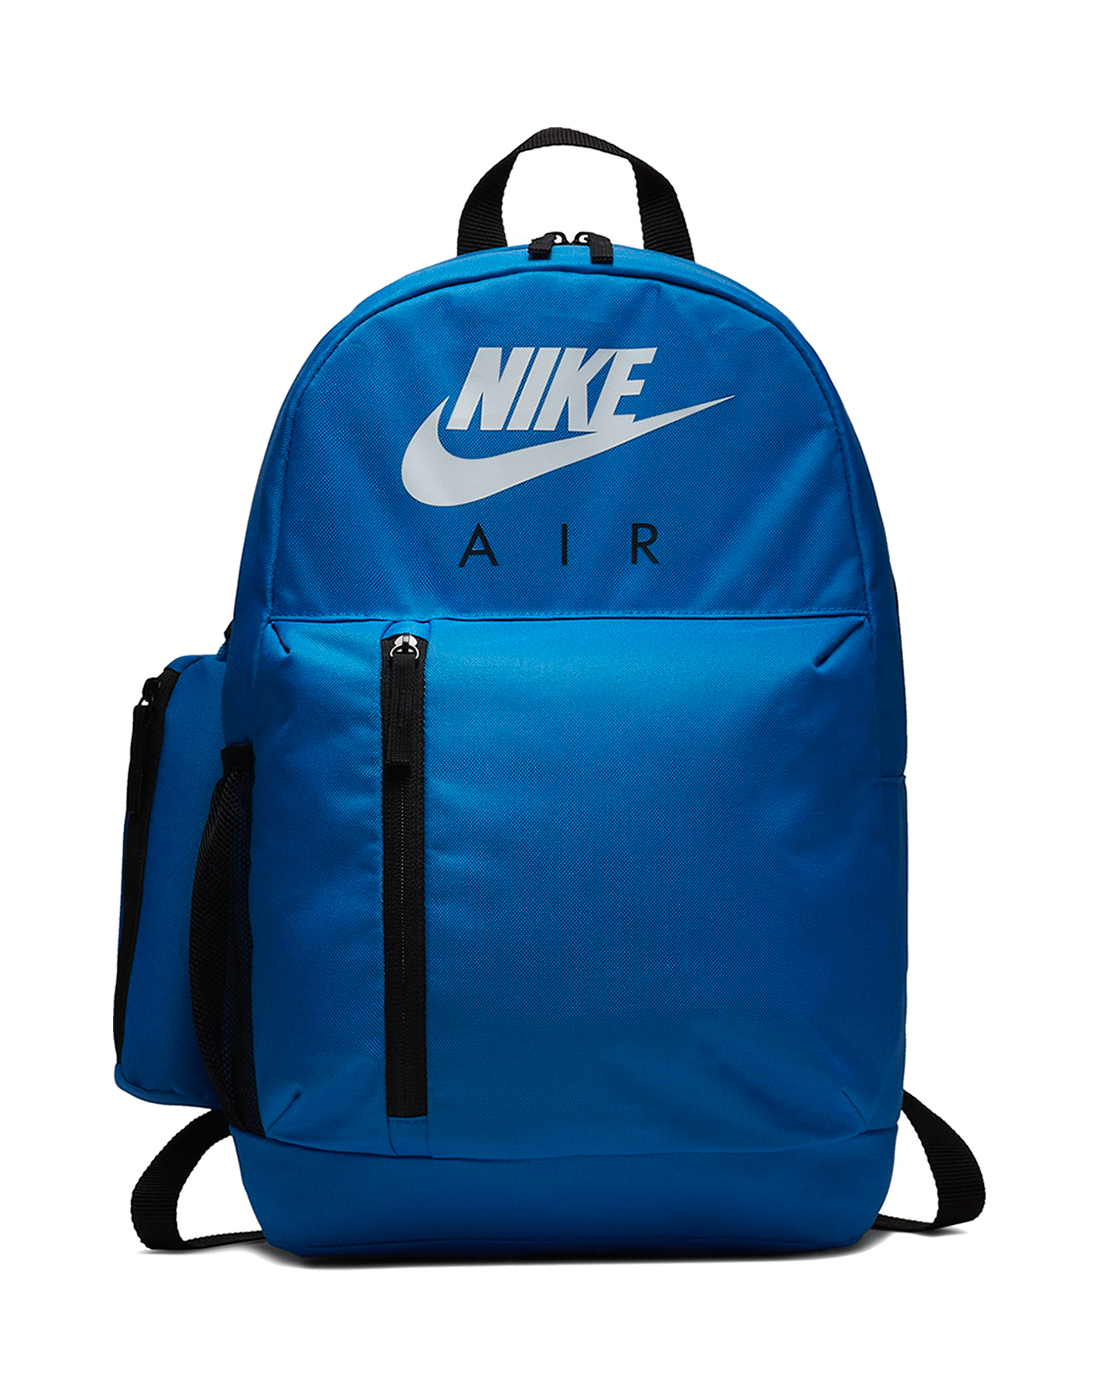 nike air max bag blue